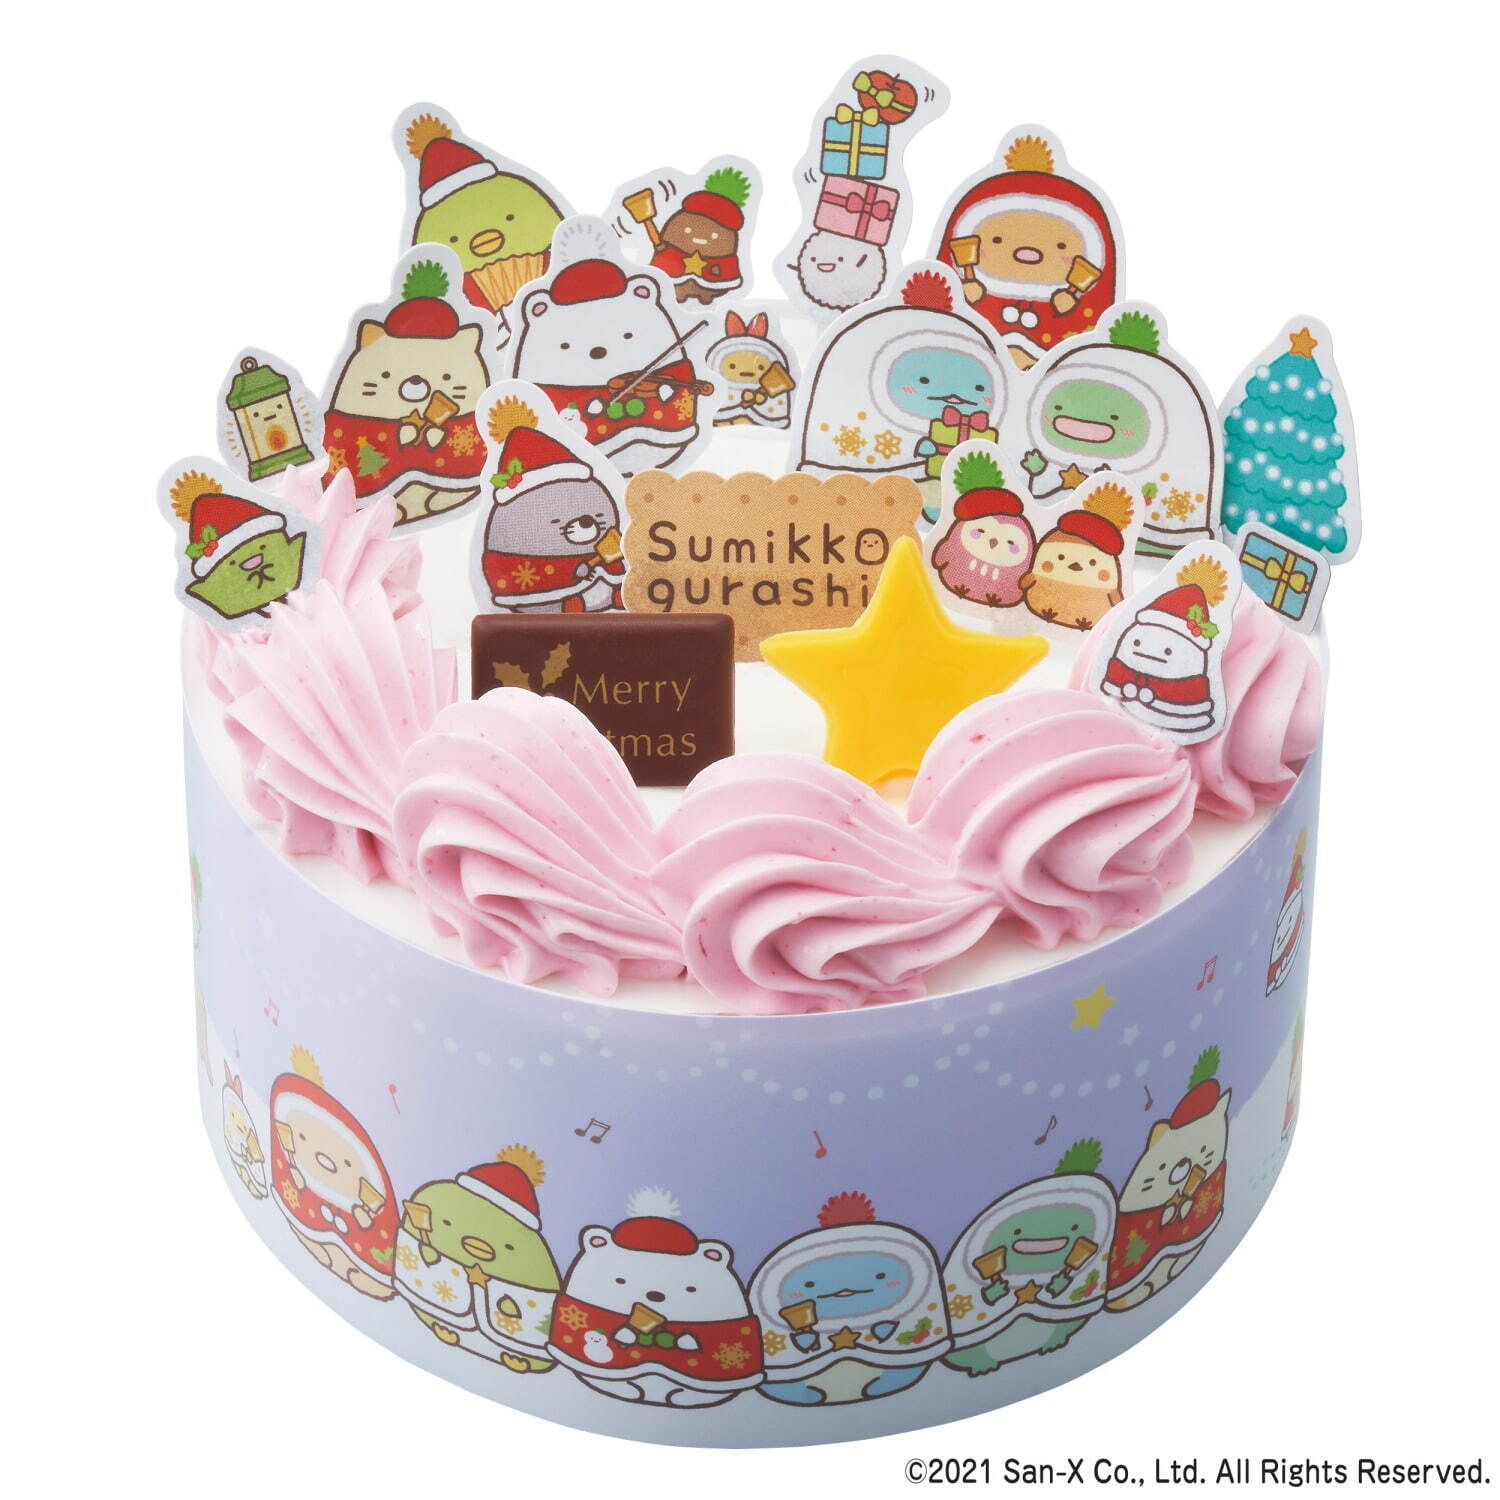 すみっコぐらし かざって楽しいクリスマスケーキ 3,990円